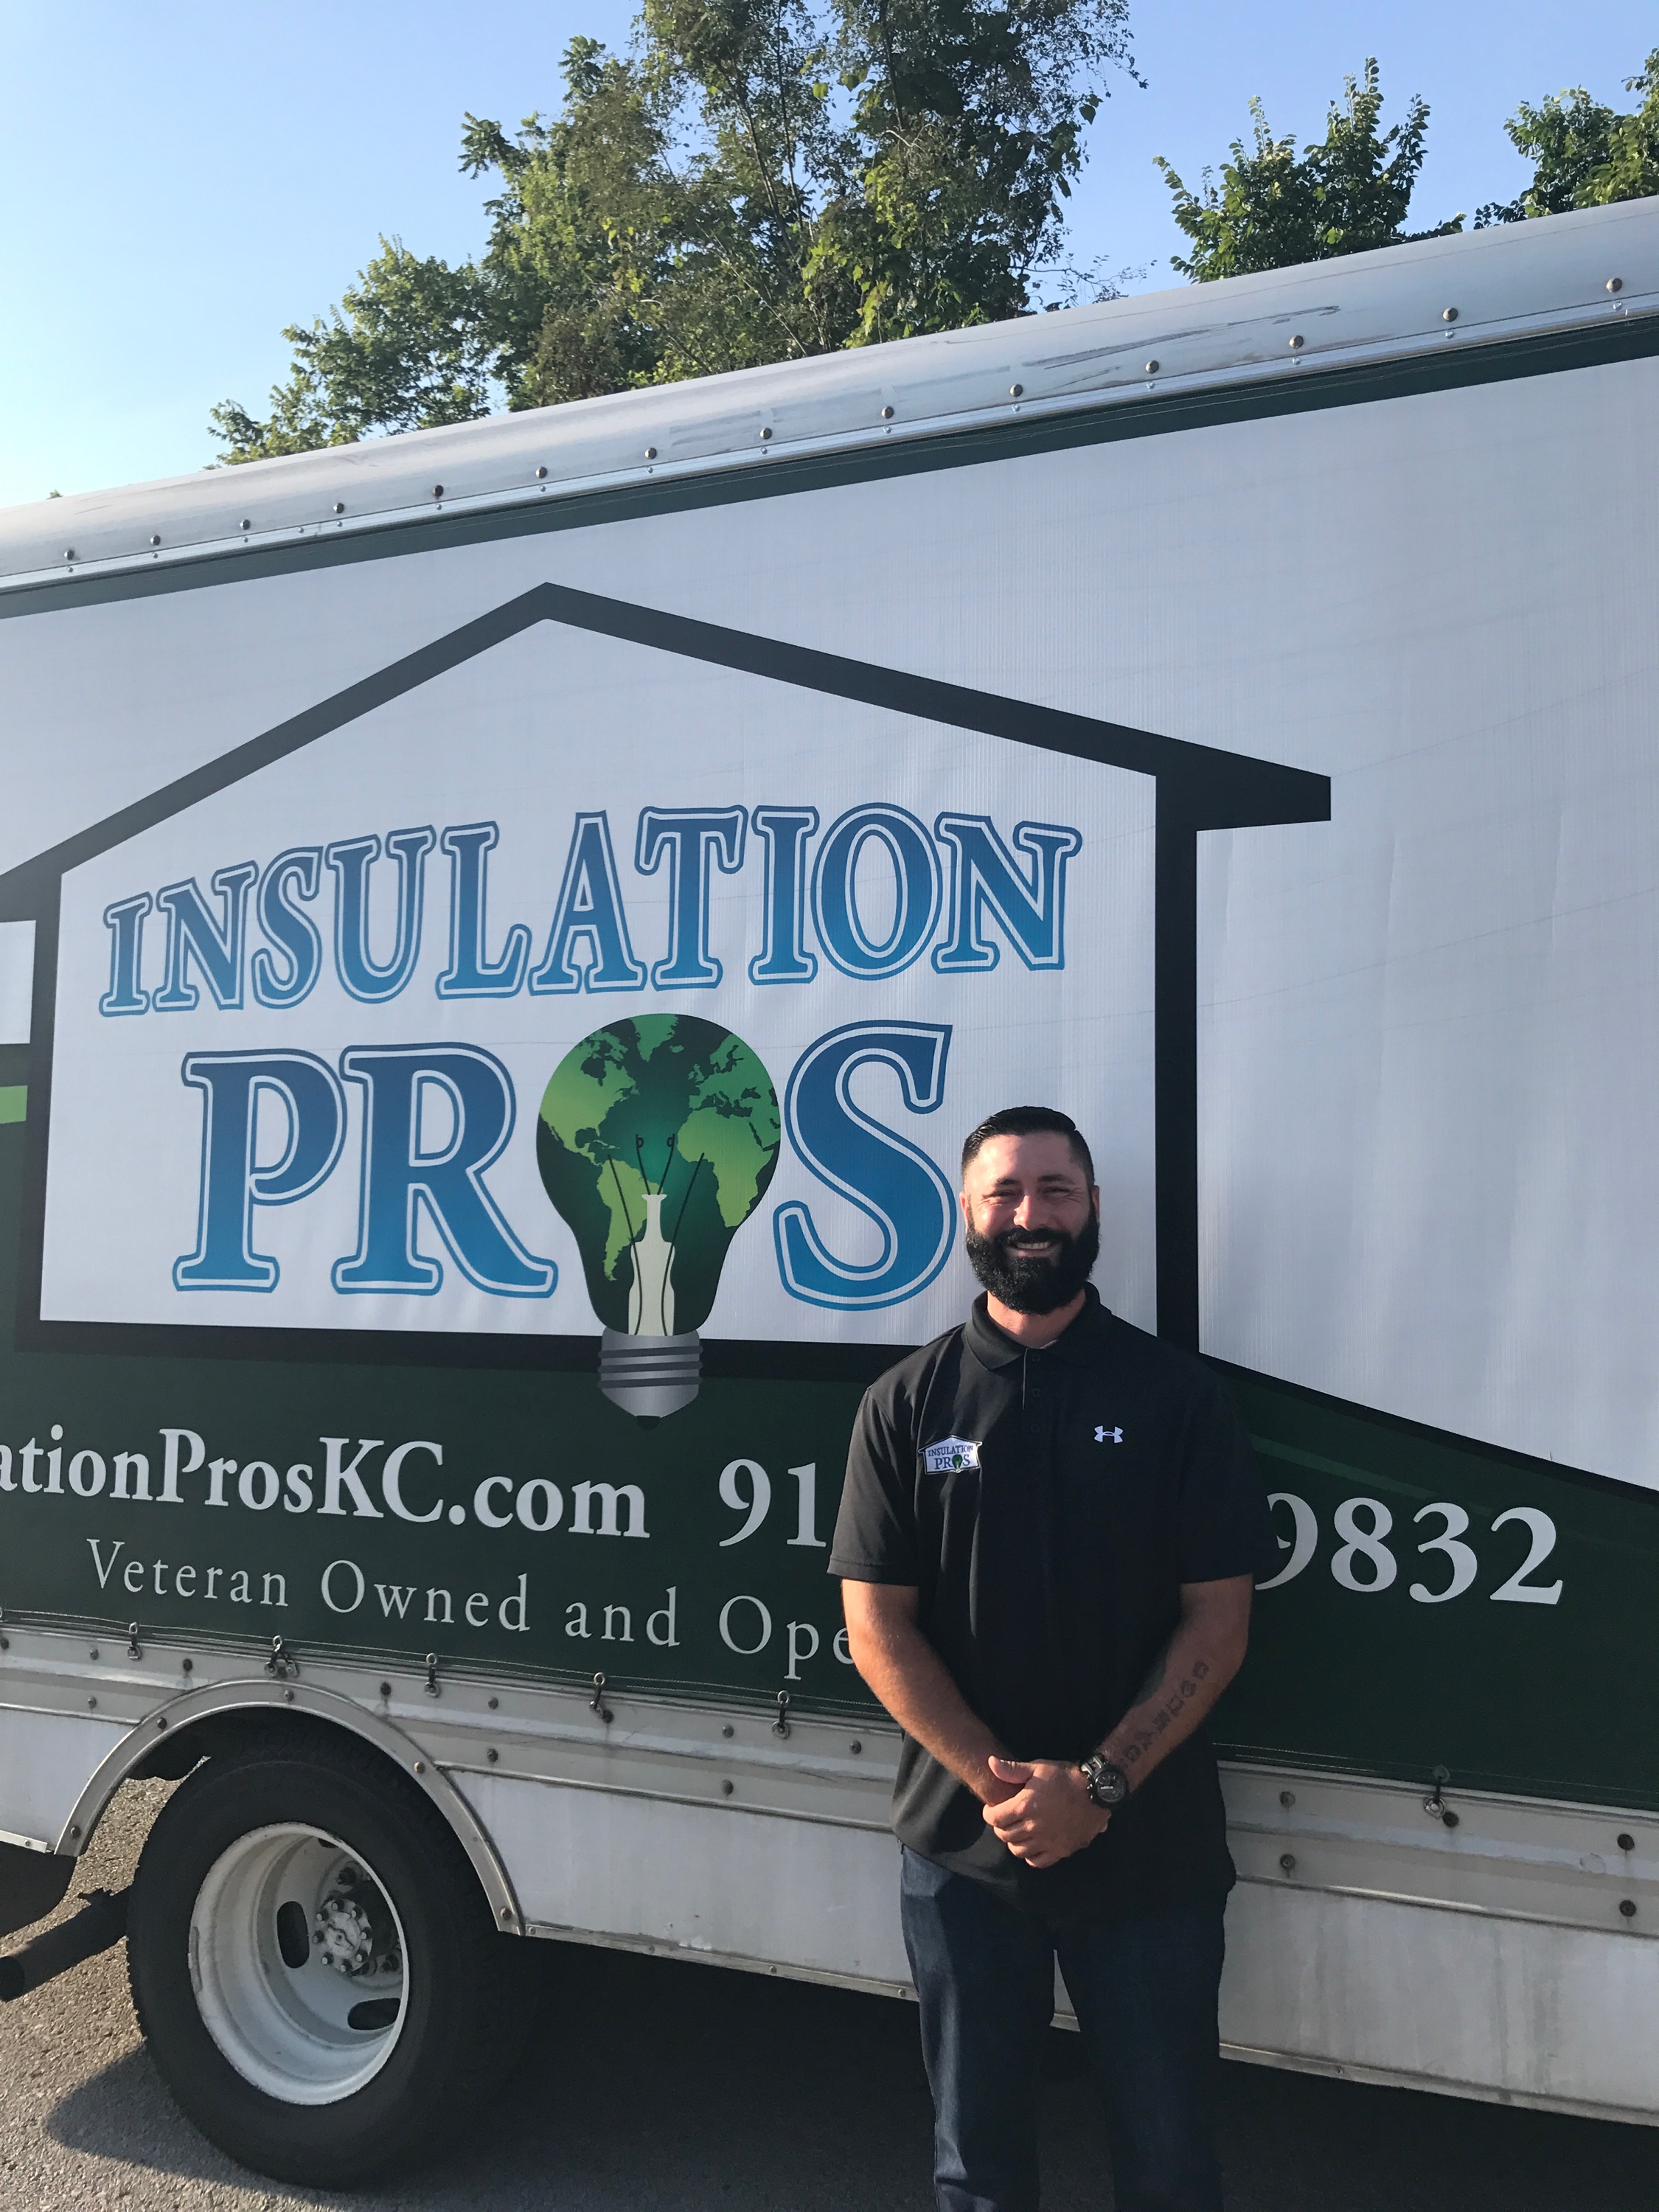 Insulation Pros, LLC Logo